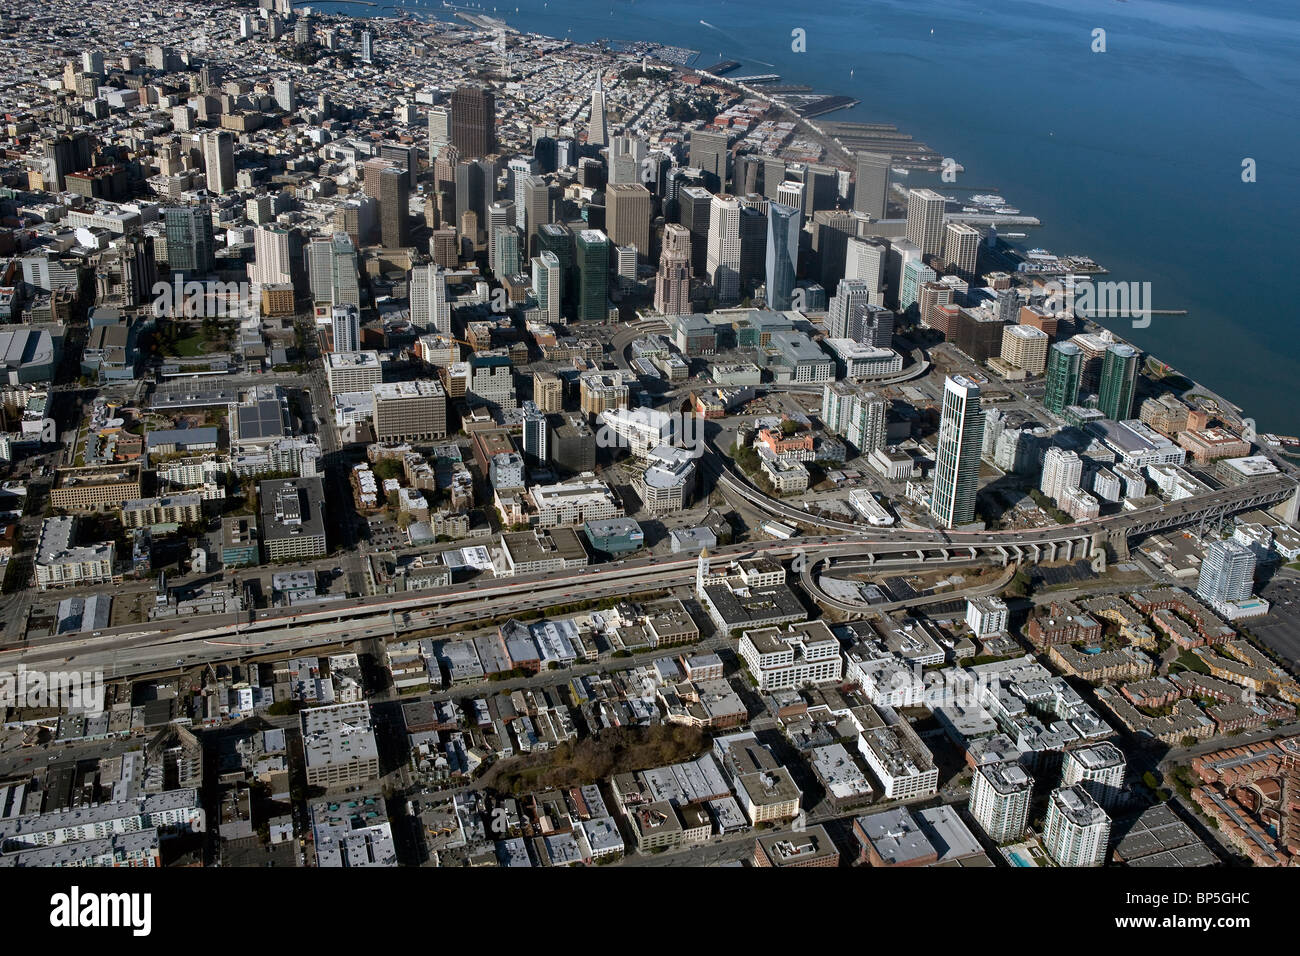 Vue aérienne au-dessus du quartier financier du centre-ville de San Francisco Californie Banque D'Images